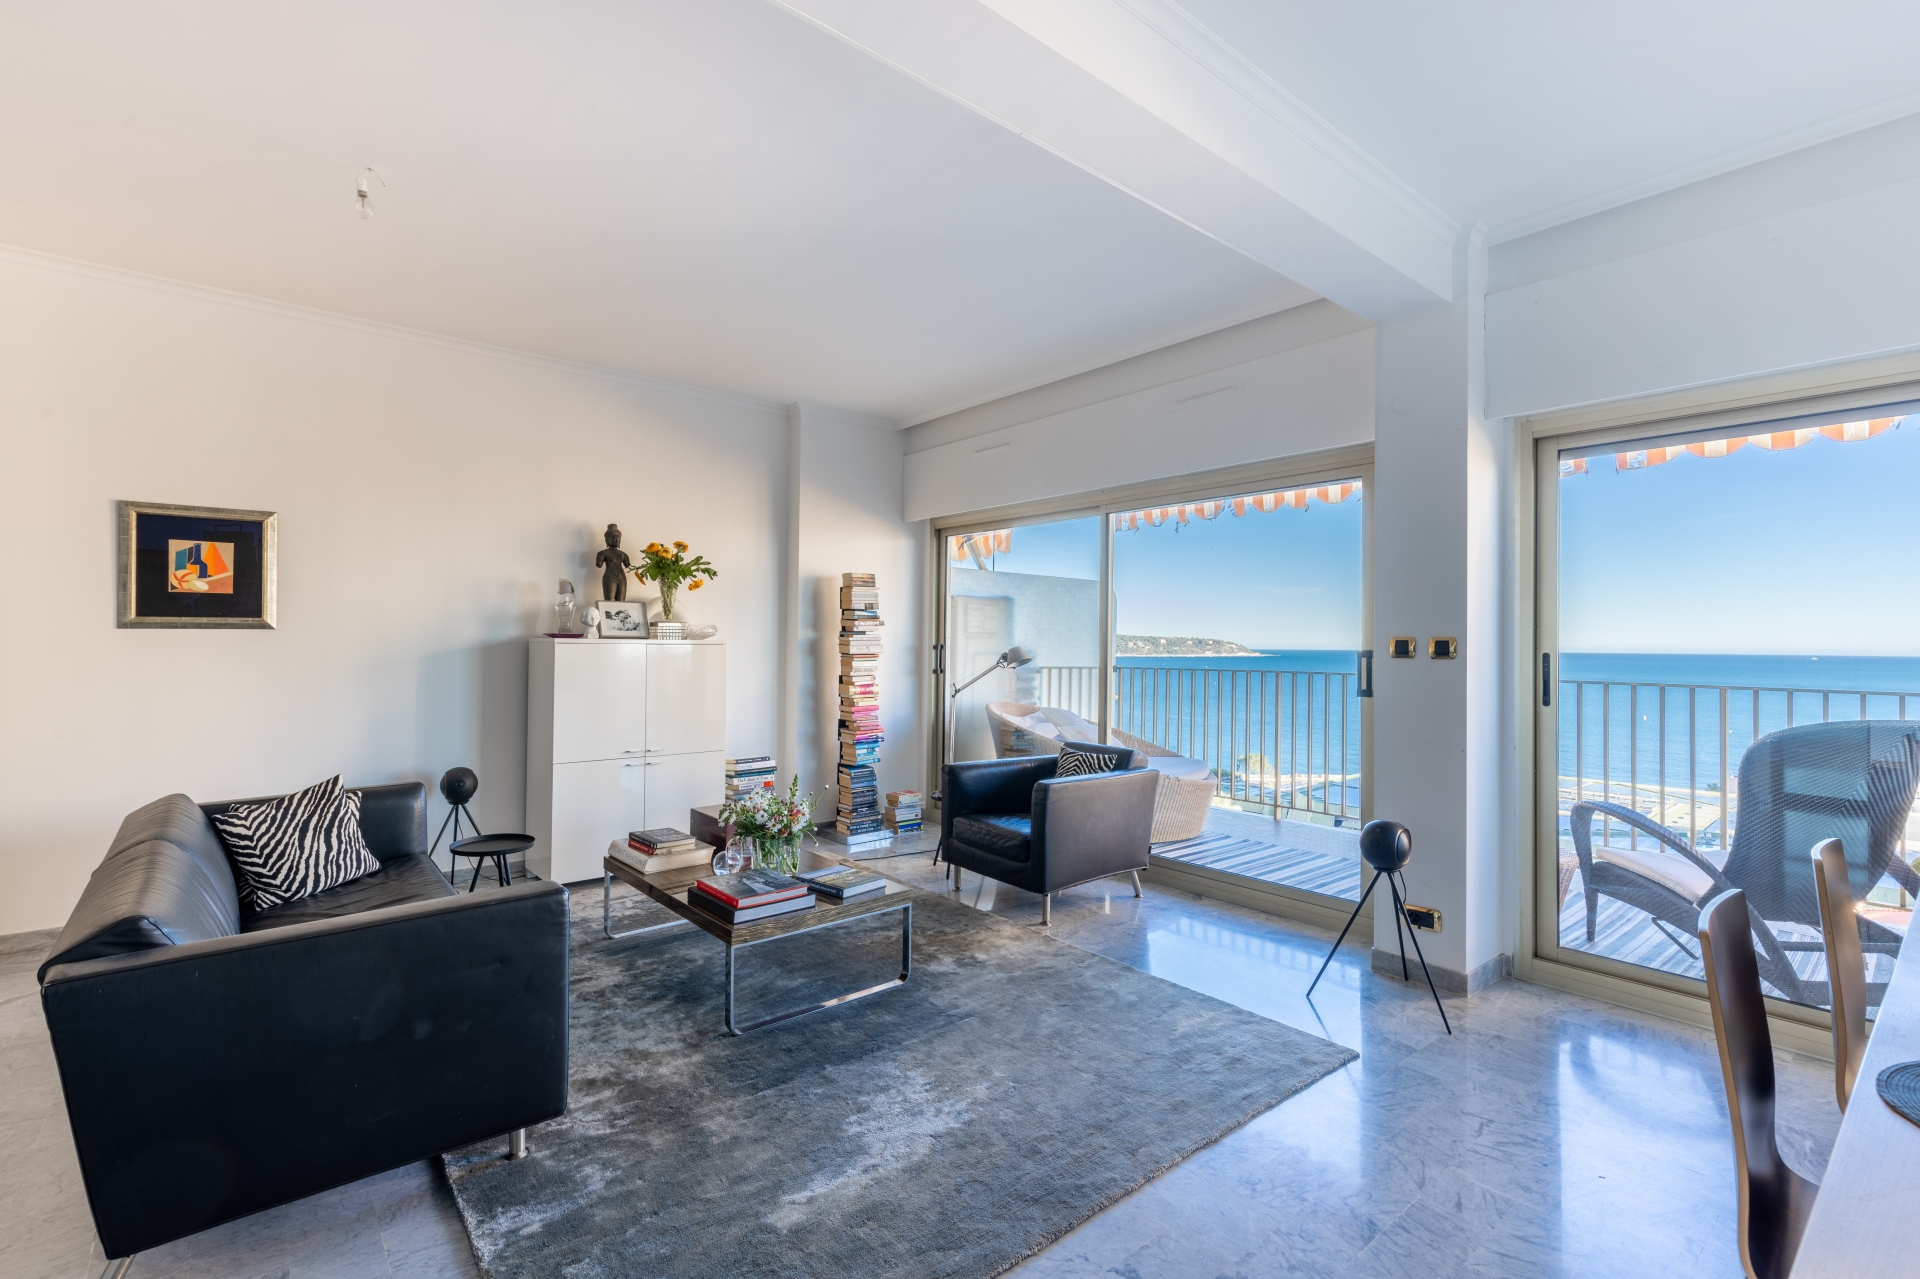 Dotta Appartement de 3 pieces a vendre - HERSILIA - Larvotto - Monaco - imghdr